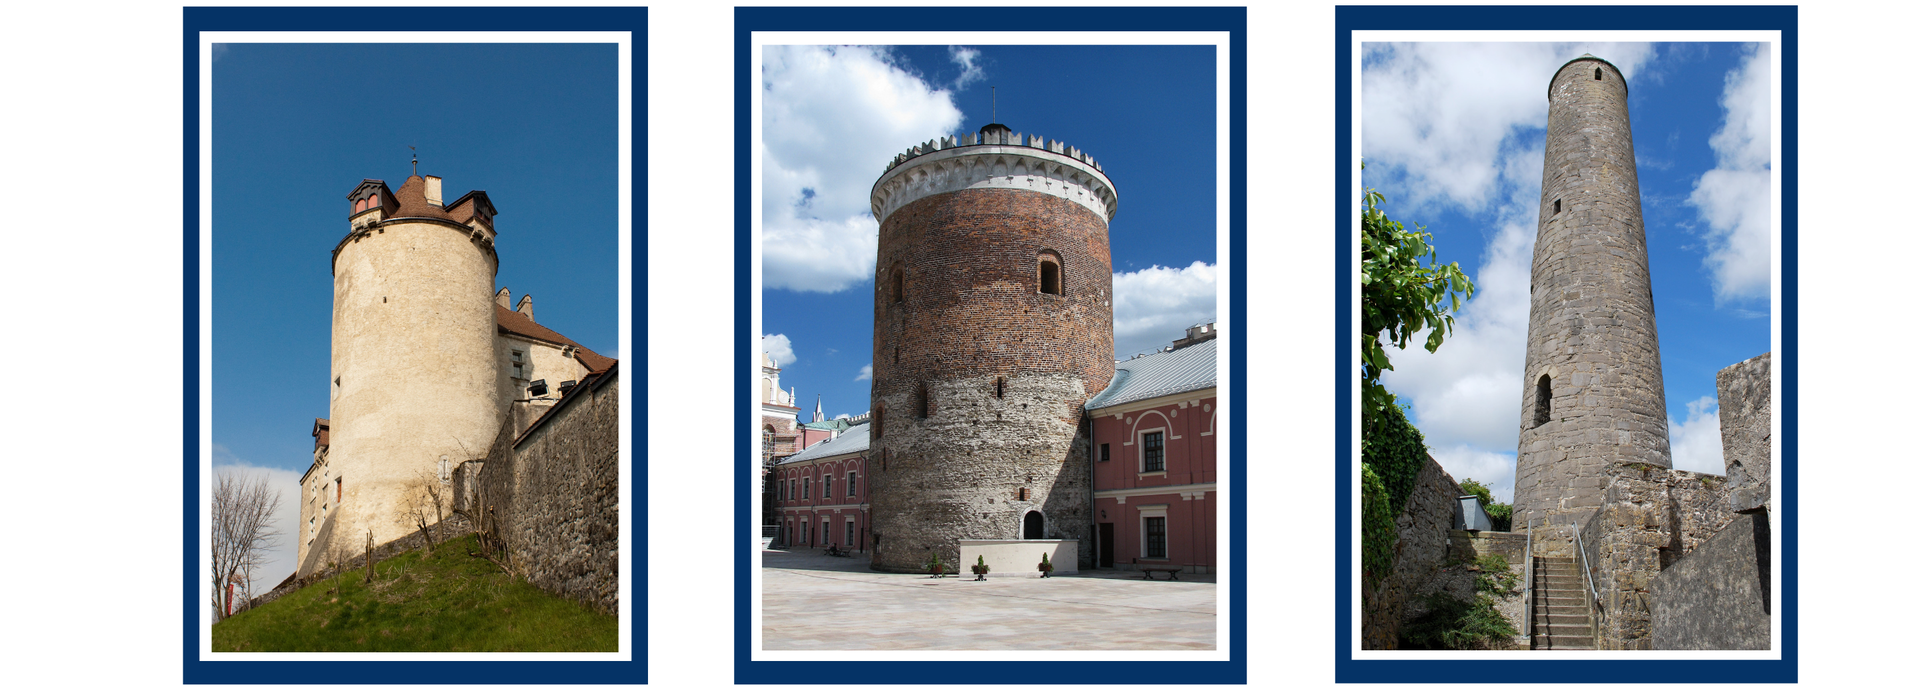 Zdjęcia trzech różnych budowli w kształcie okrągłej wieży.